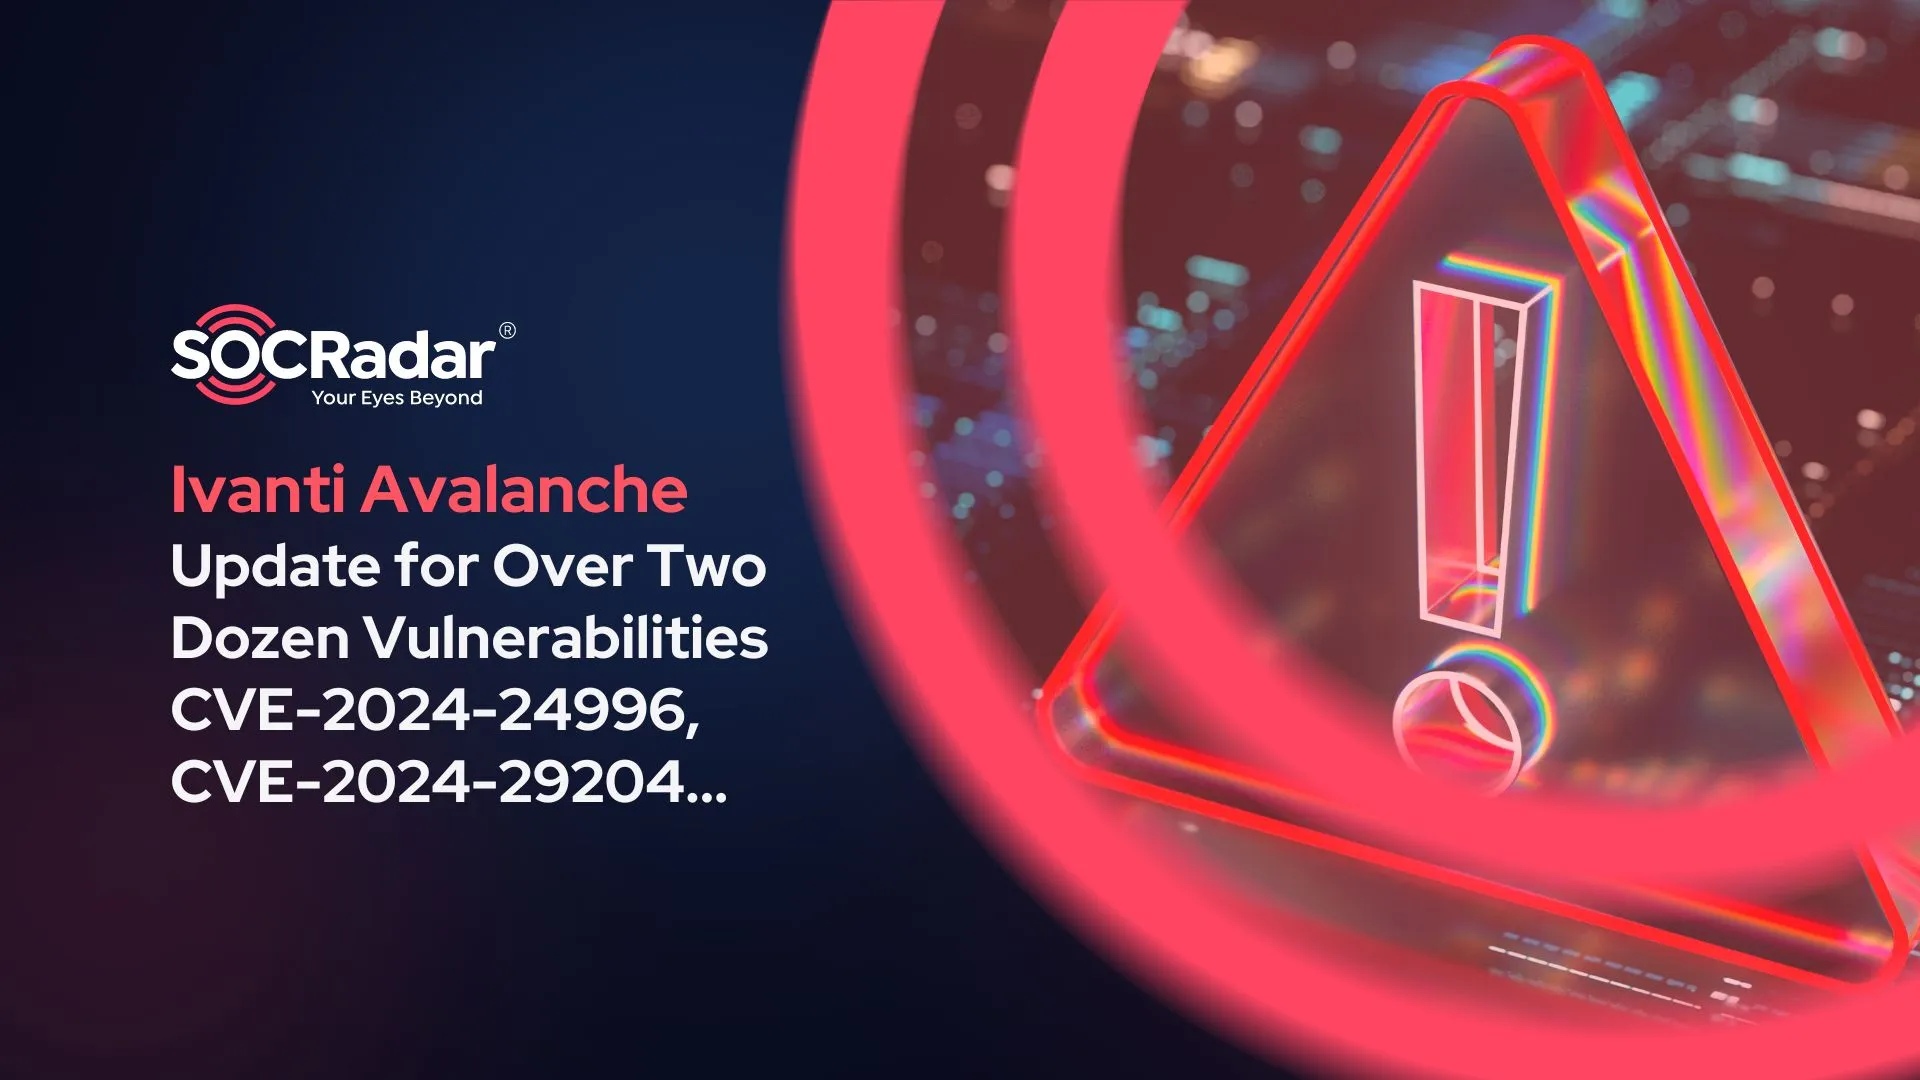 SOCRadar® Cyber Intelligence Inc. | Ivanti Avalanche Received an Update for Over Two Dozen Vulnerabilities (CVE-2024-24996, CVE-2024-29204…)